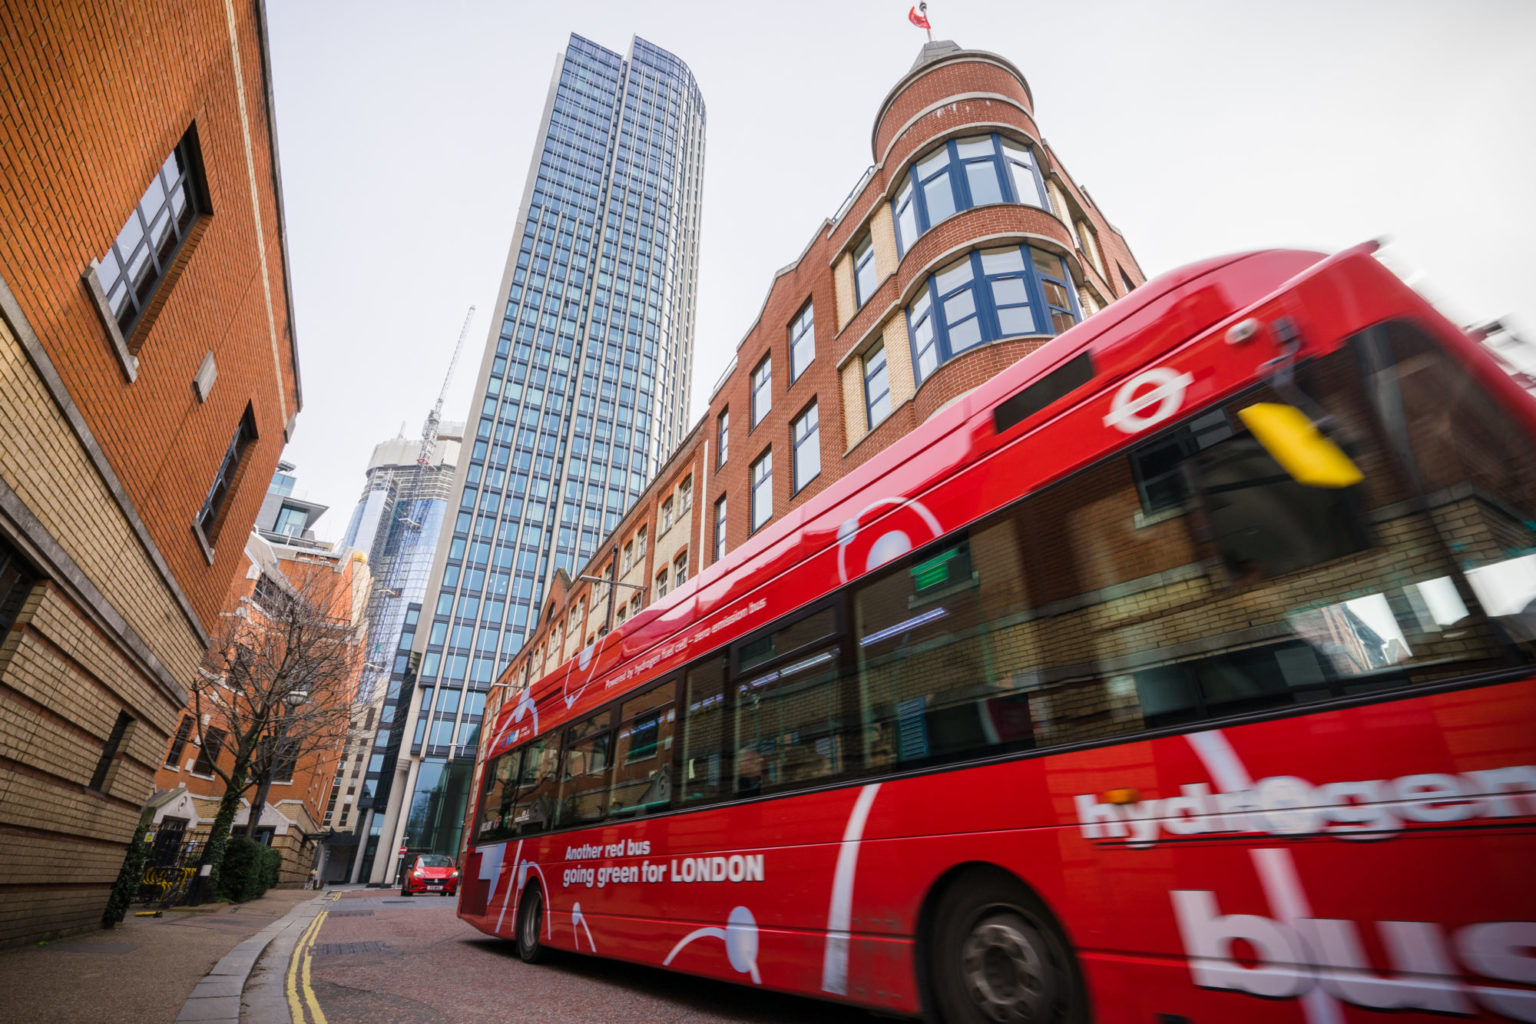 Rød dobbeltdekker buss med hvit påskrift "hydrogen bus" kjører gjennom London-gata med høyhus i bakgrunnen